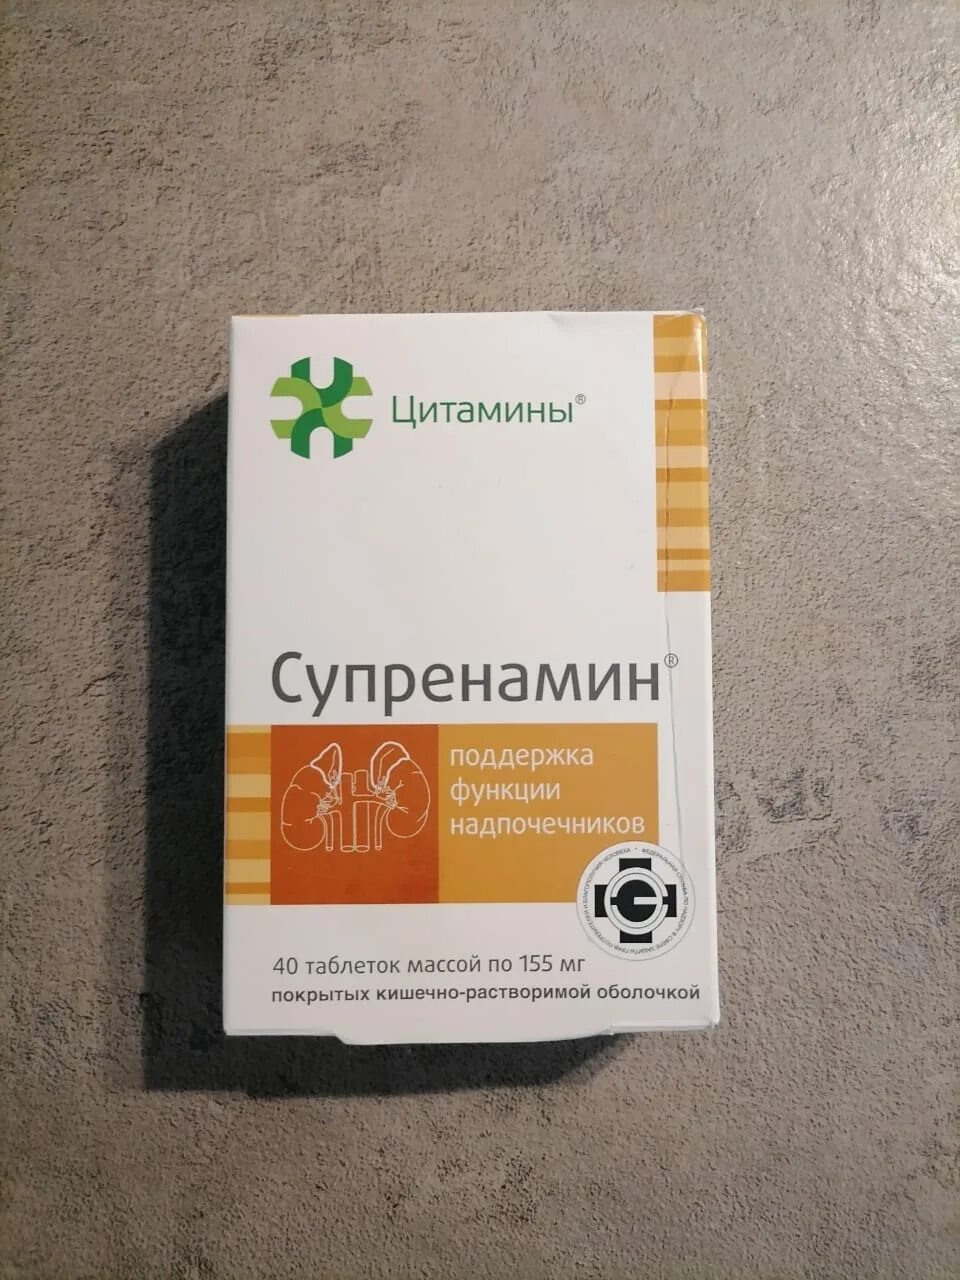 Цитамины Супренамин. Супренамин таблетки. Супренамин таблетки 10 мг. Супренамин заменитель.